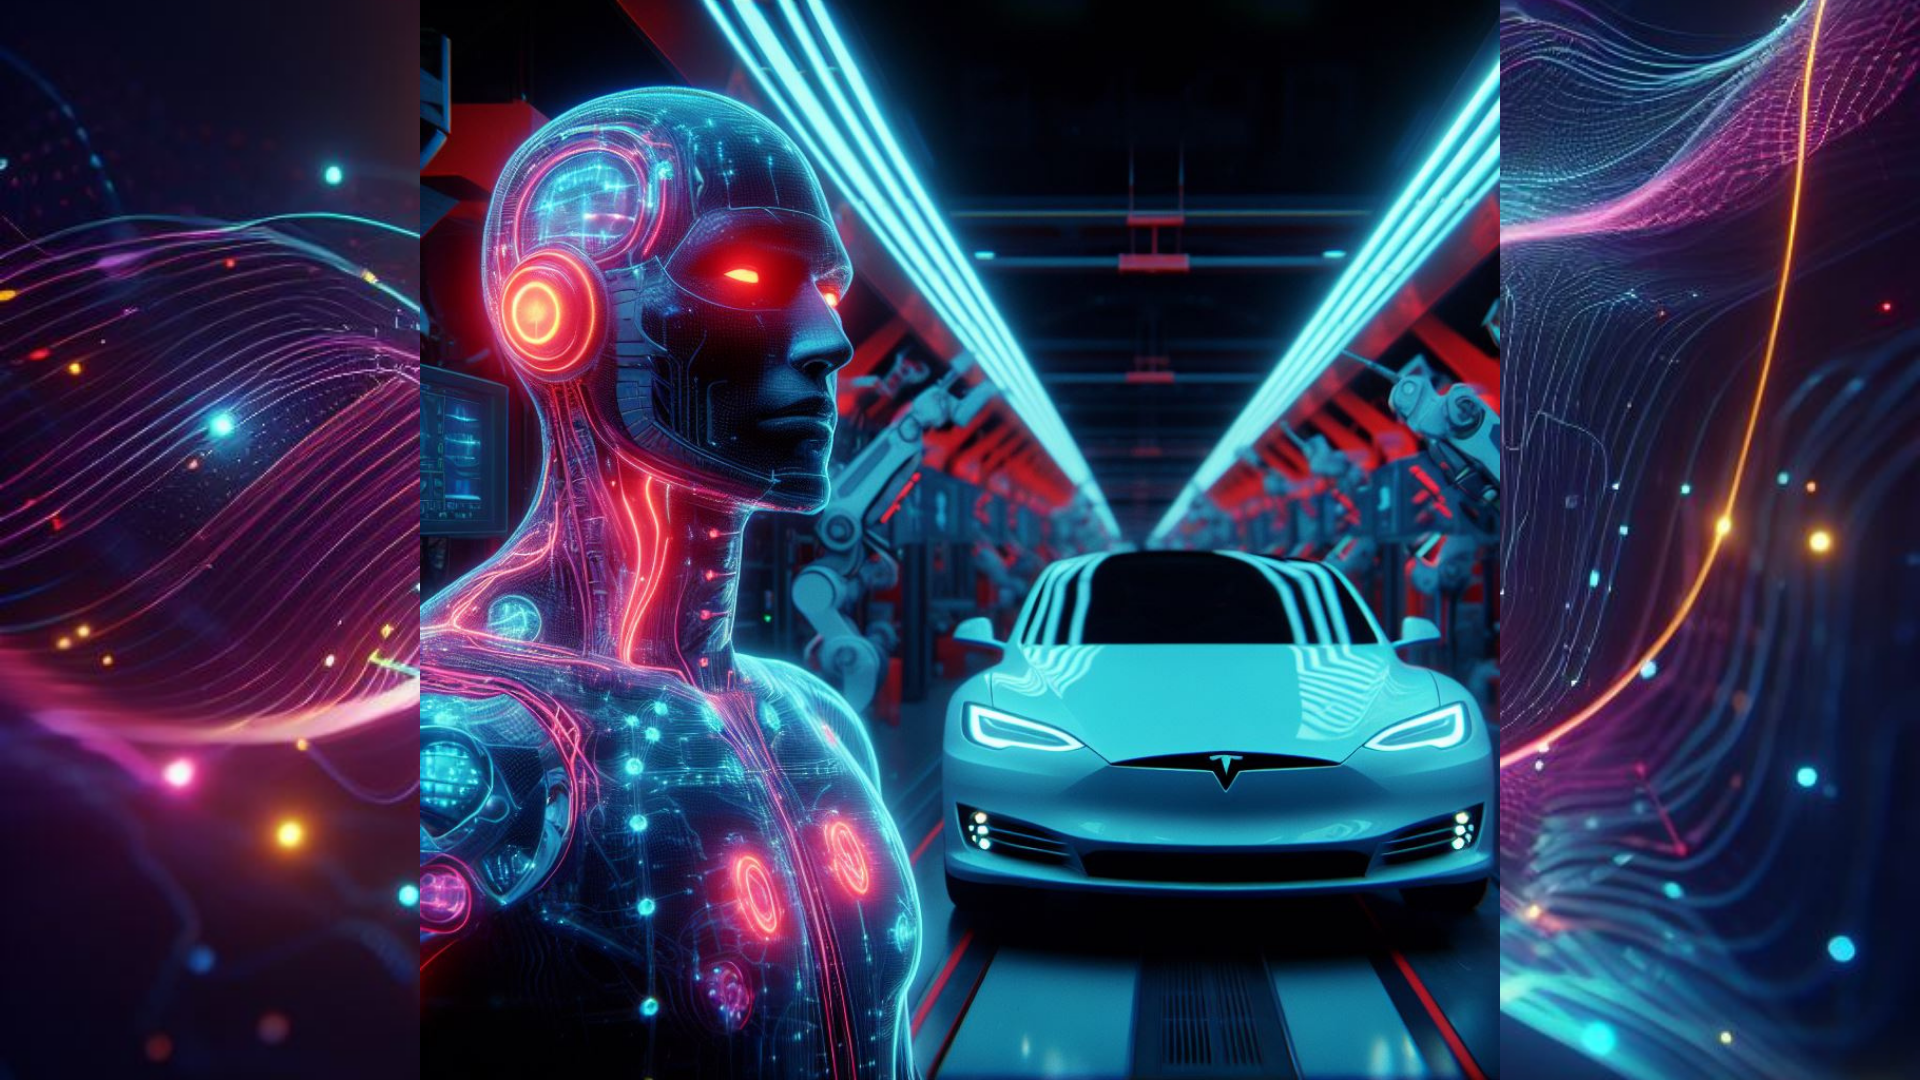 Примером успешного применения ИИ в промышленности может служить компания Tesla, которая использует технологии машинного обучения для управления производственной линией своих электромобилей.